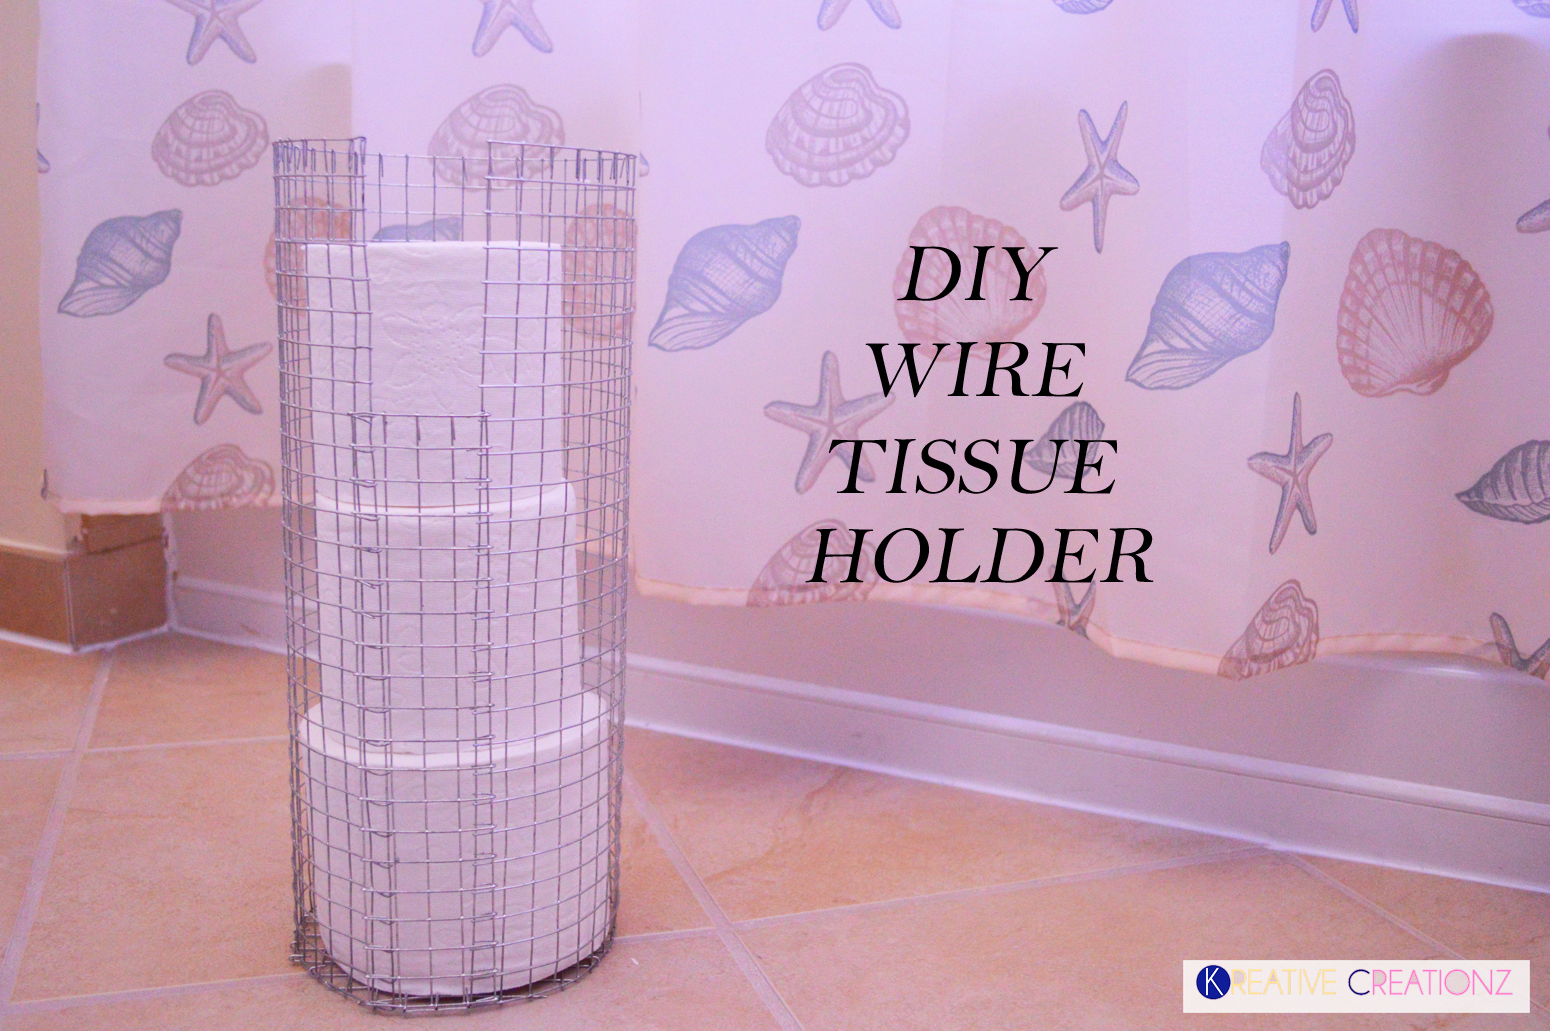 DIY Wire Tissue Holder